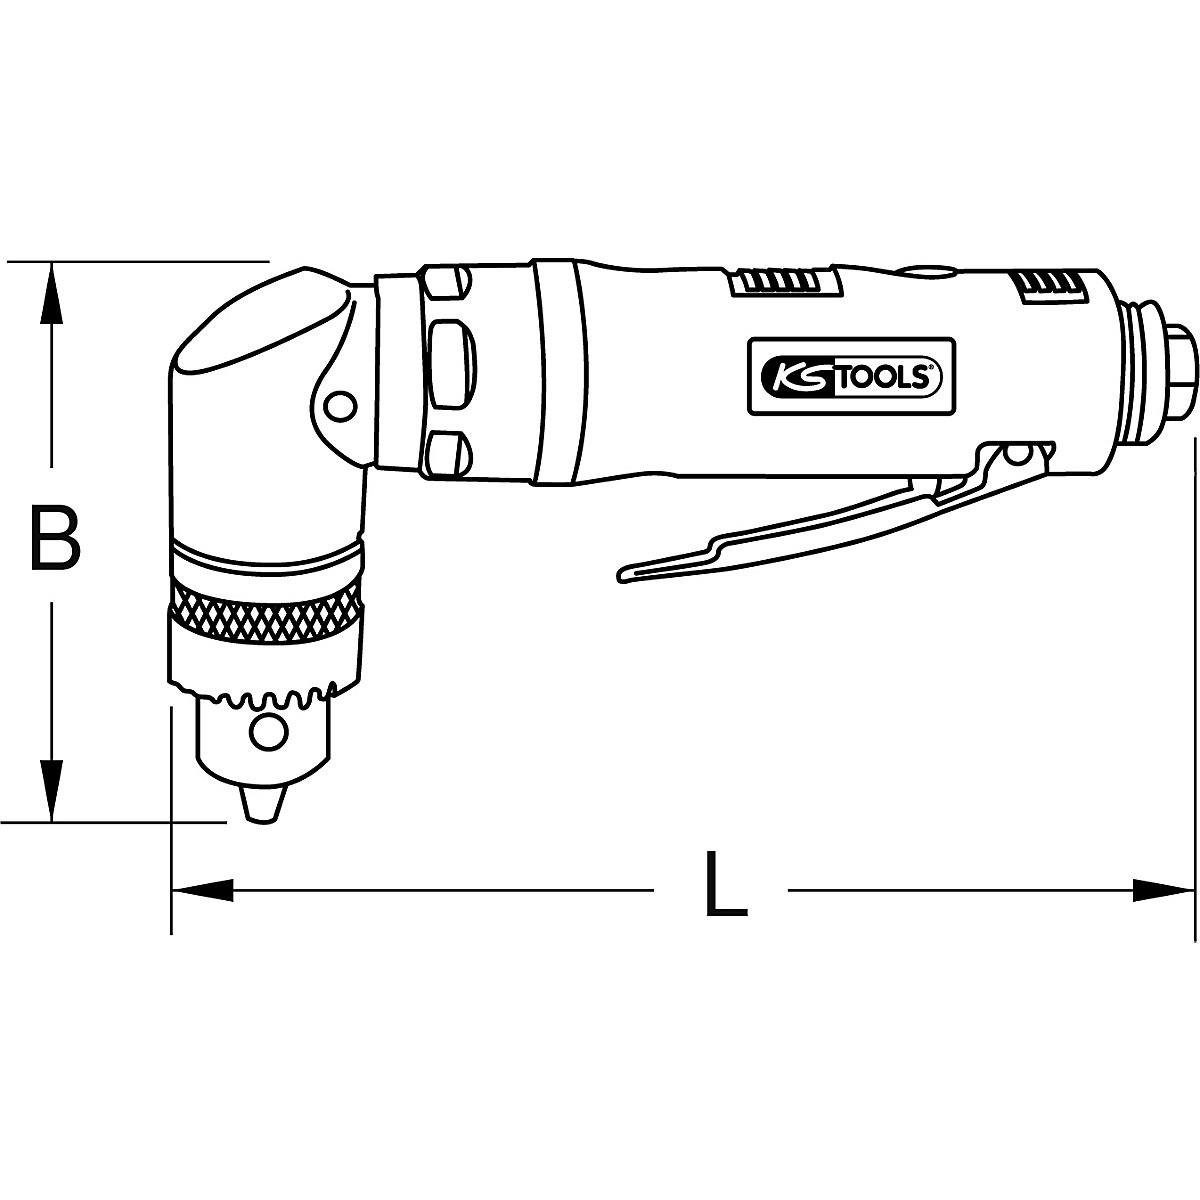 Kotni vrtalnik s stisnjenim zrakom – KS Tools (Slika izdelka 3)-2